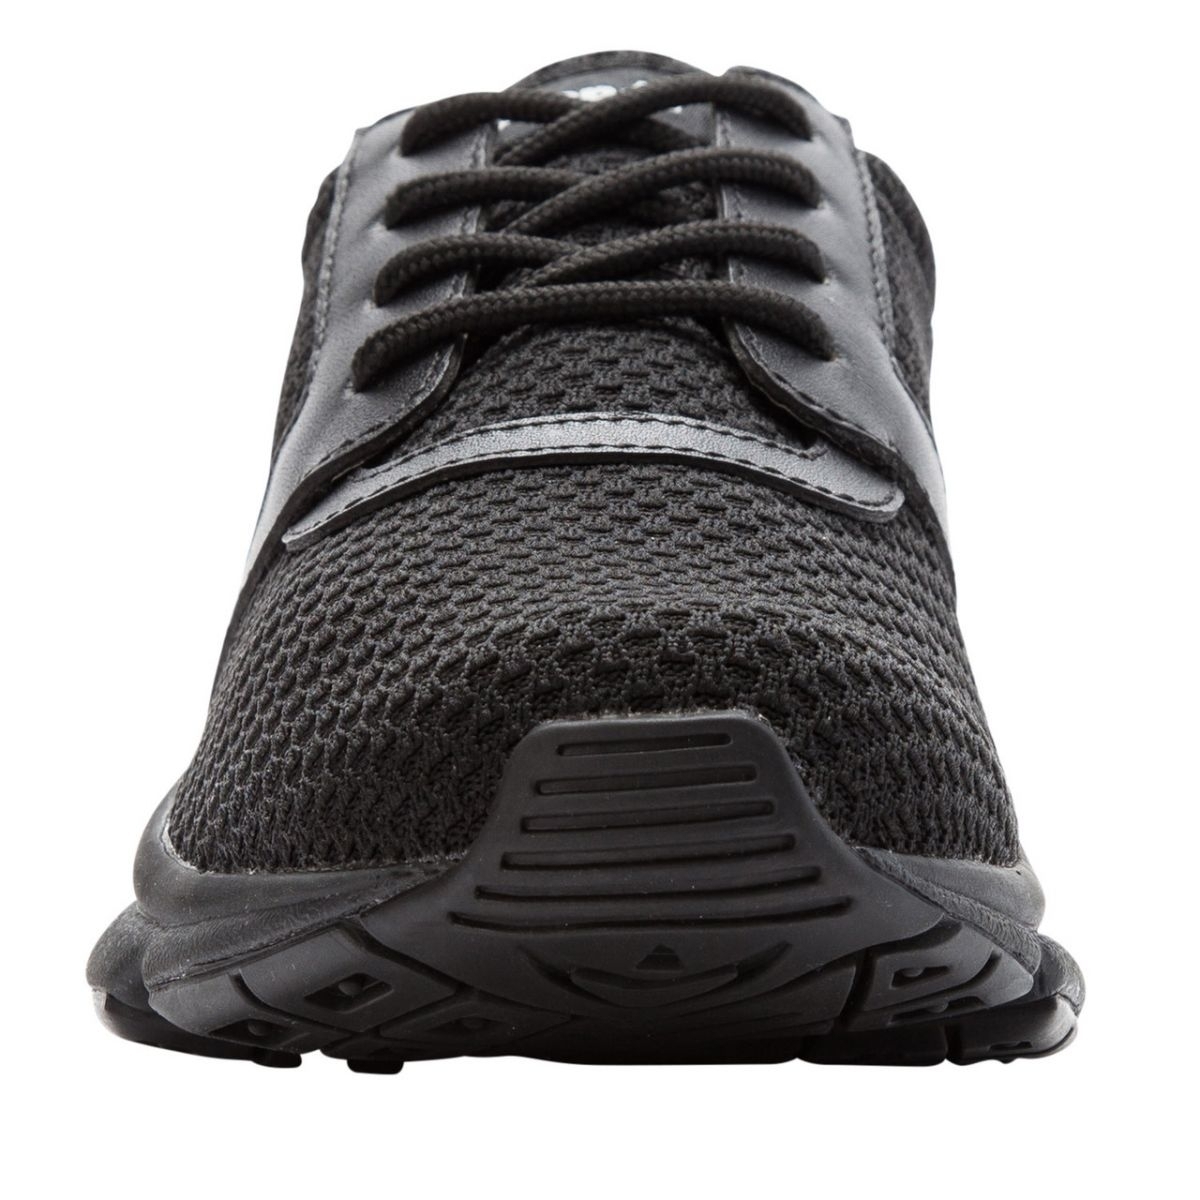 Propet Women's Stability X Walking Shoe Black - WAA032MBLK BLACK - BLACK, 9 Wide